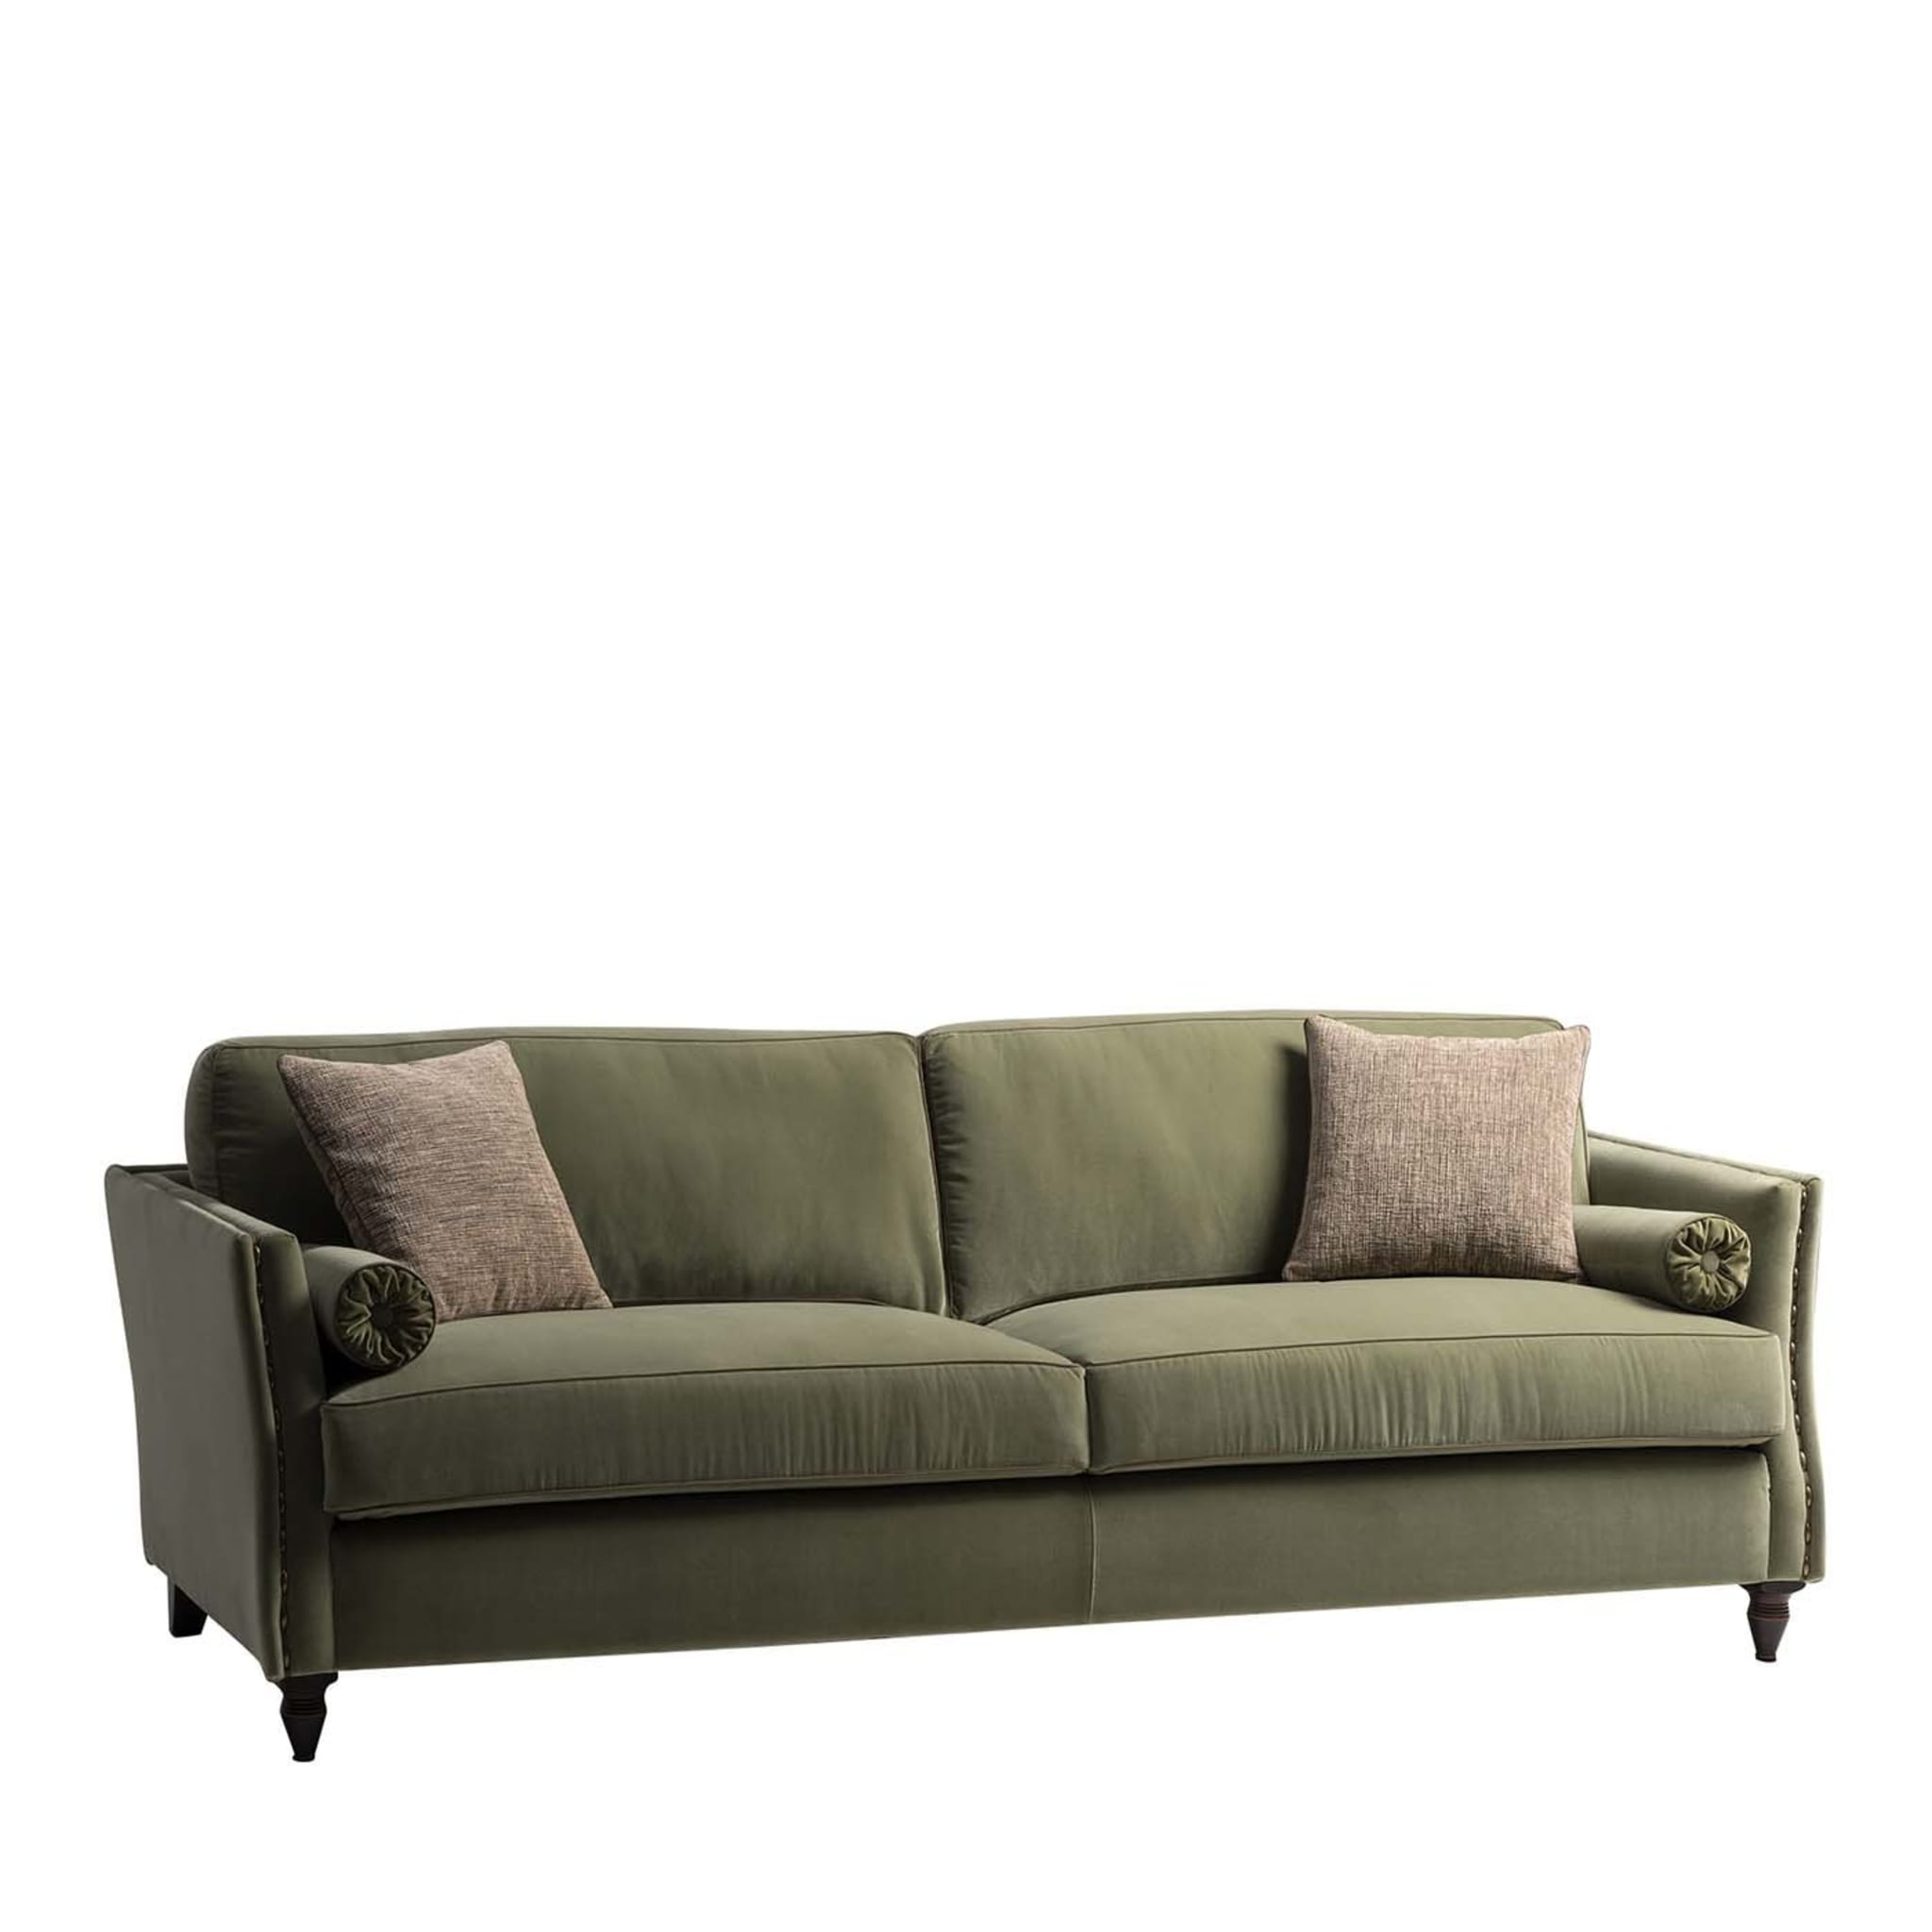 Bramante 3-Sitzer Sofa Grün Couture Kollektion - Hauptansicht